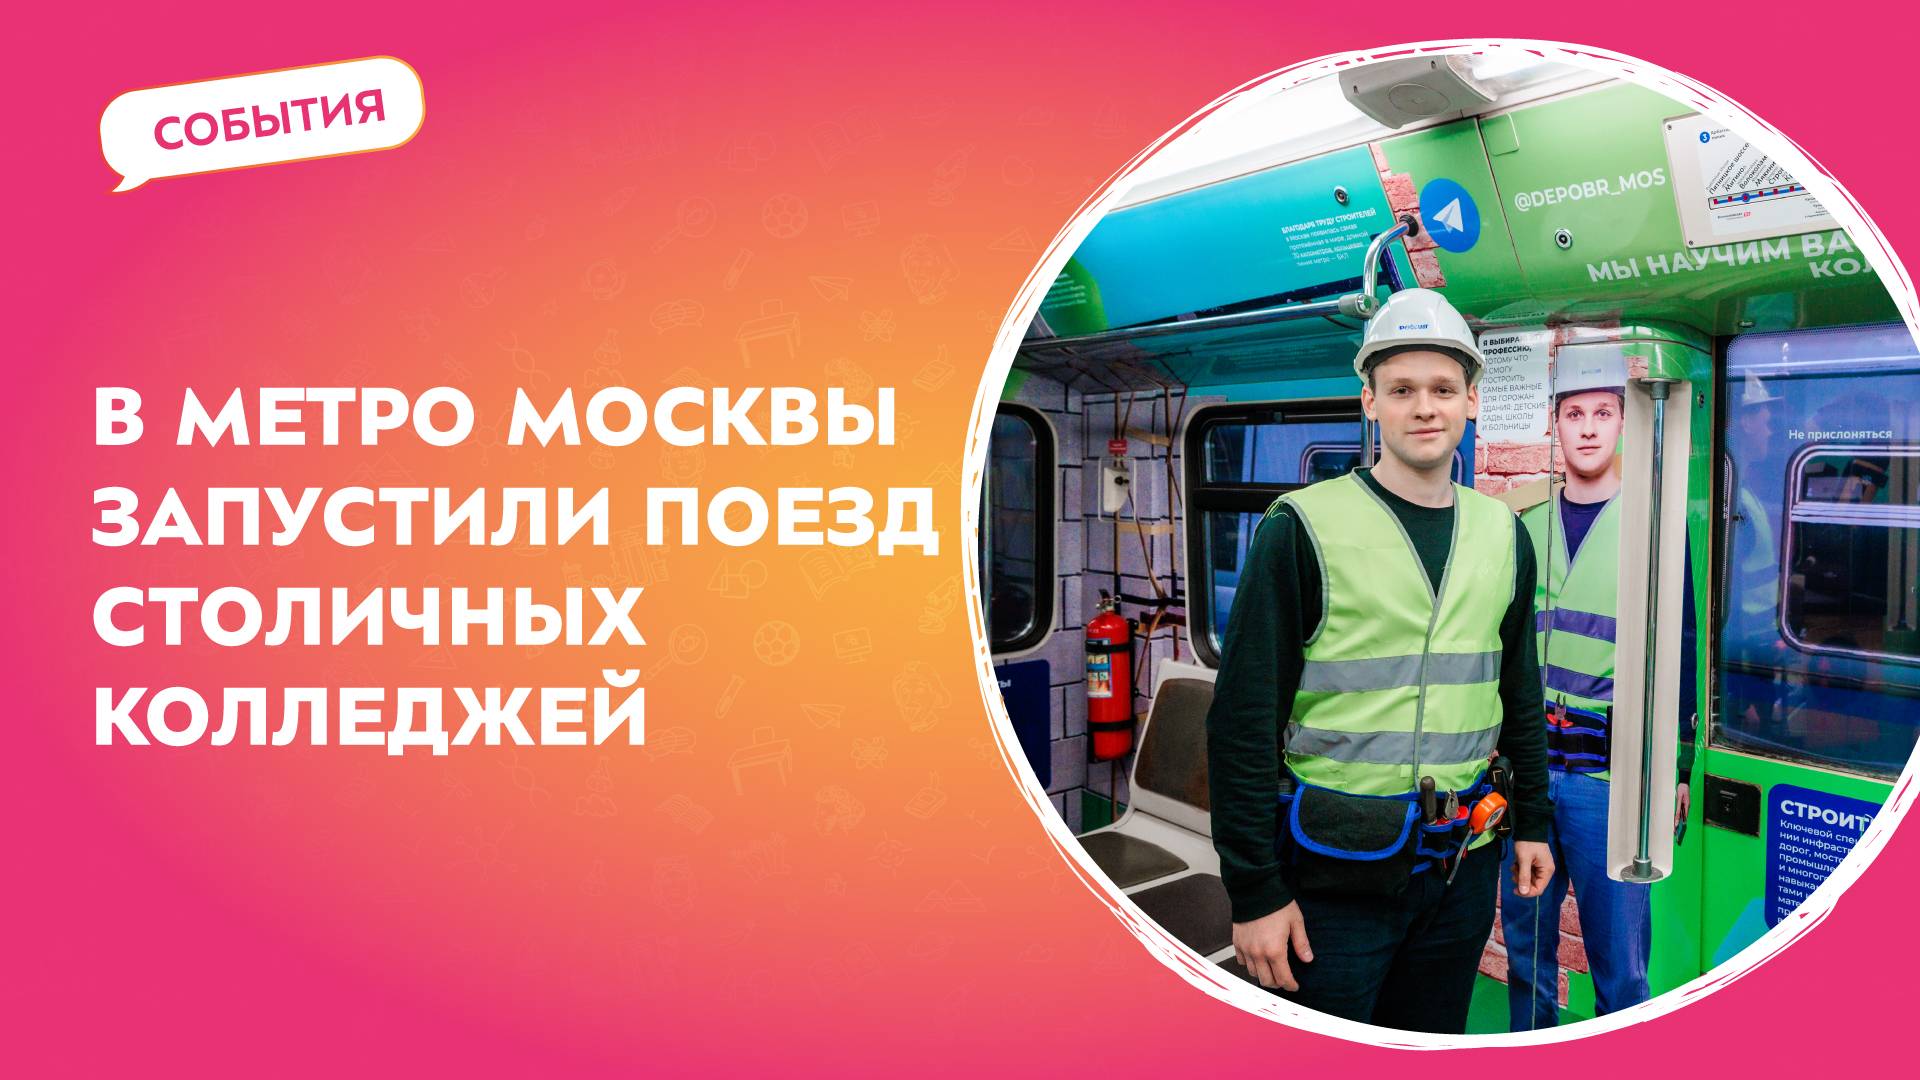 В метро Москвы запустили поезд столичных колледжей | События